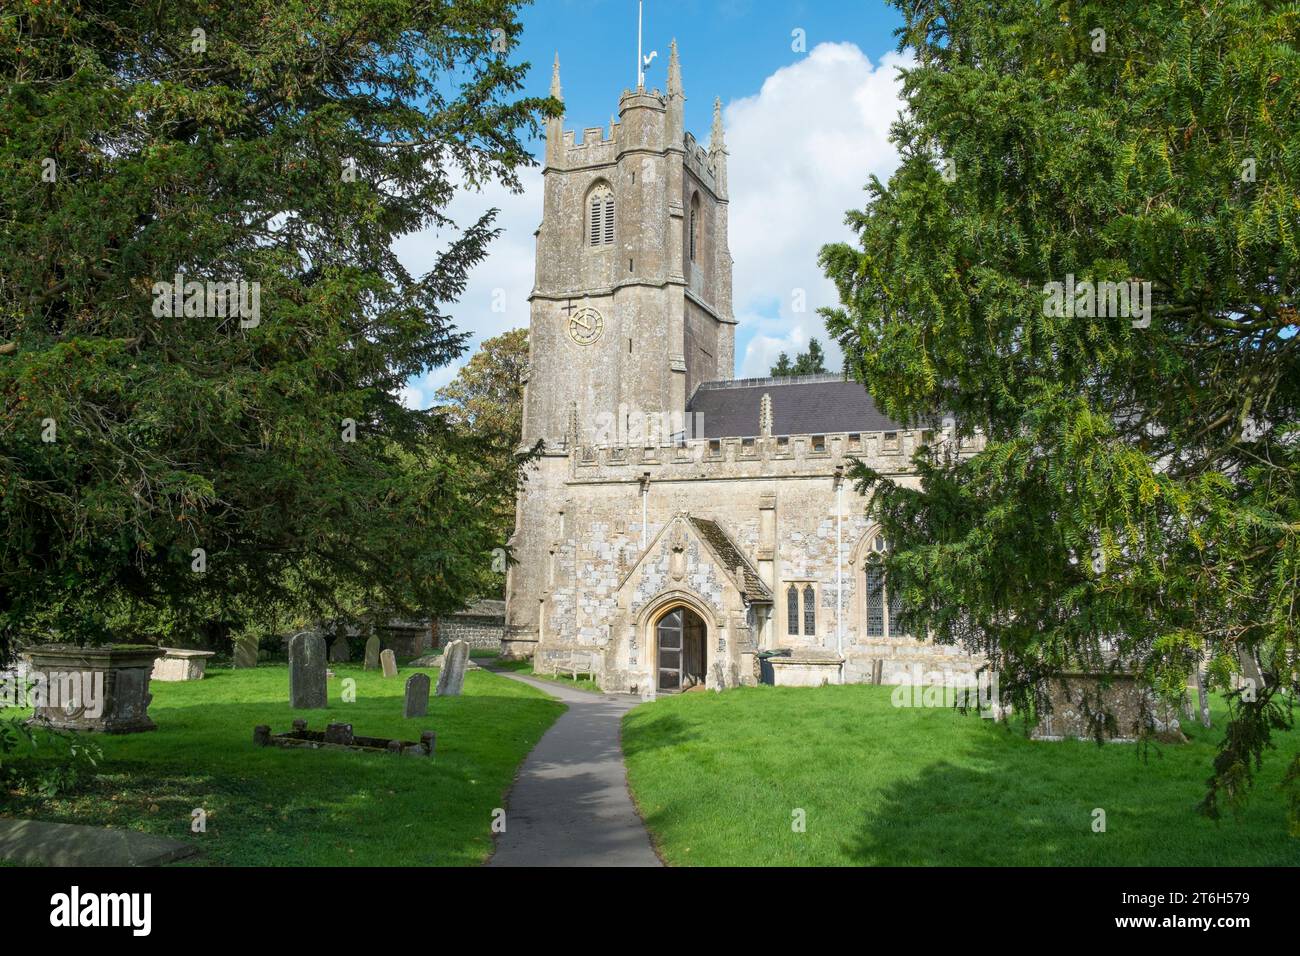 The parish church of St James at Avebury Stock Photo